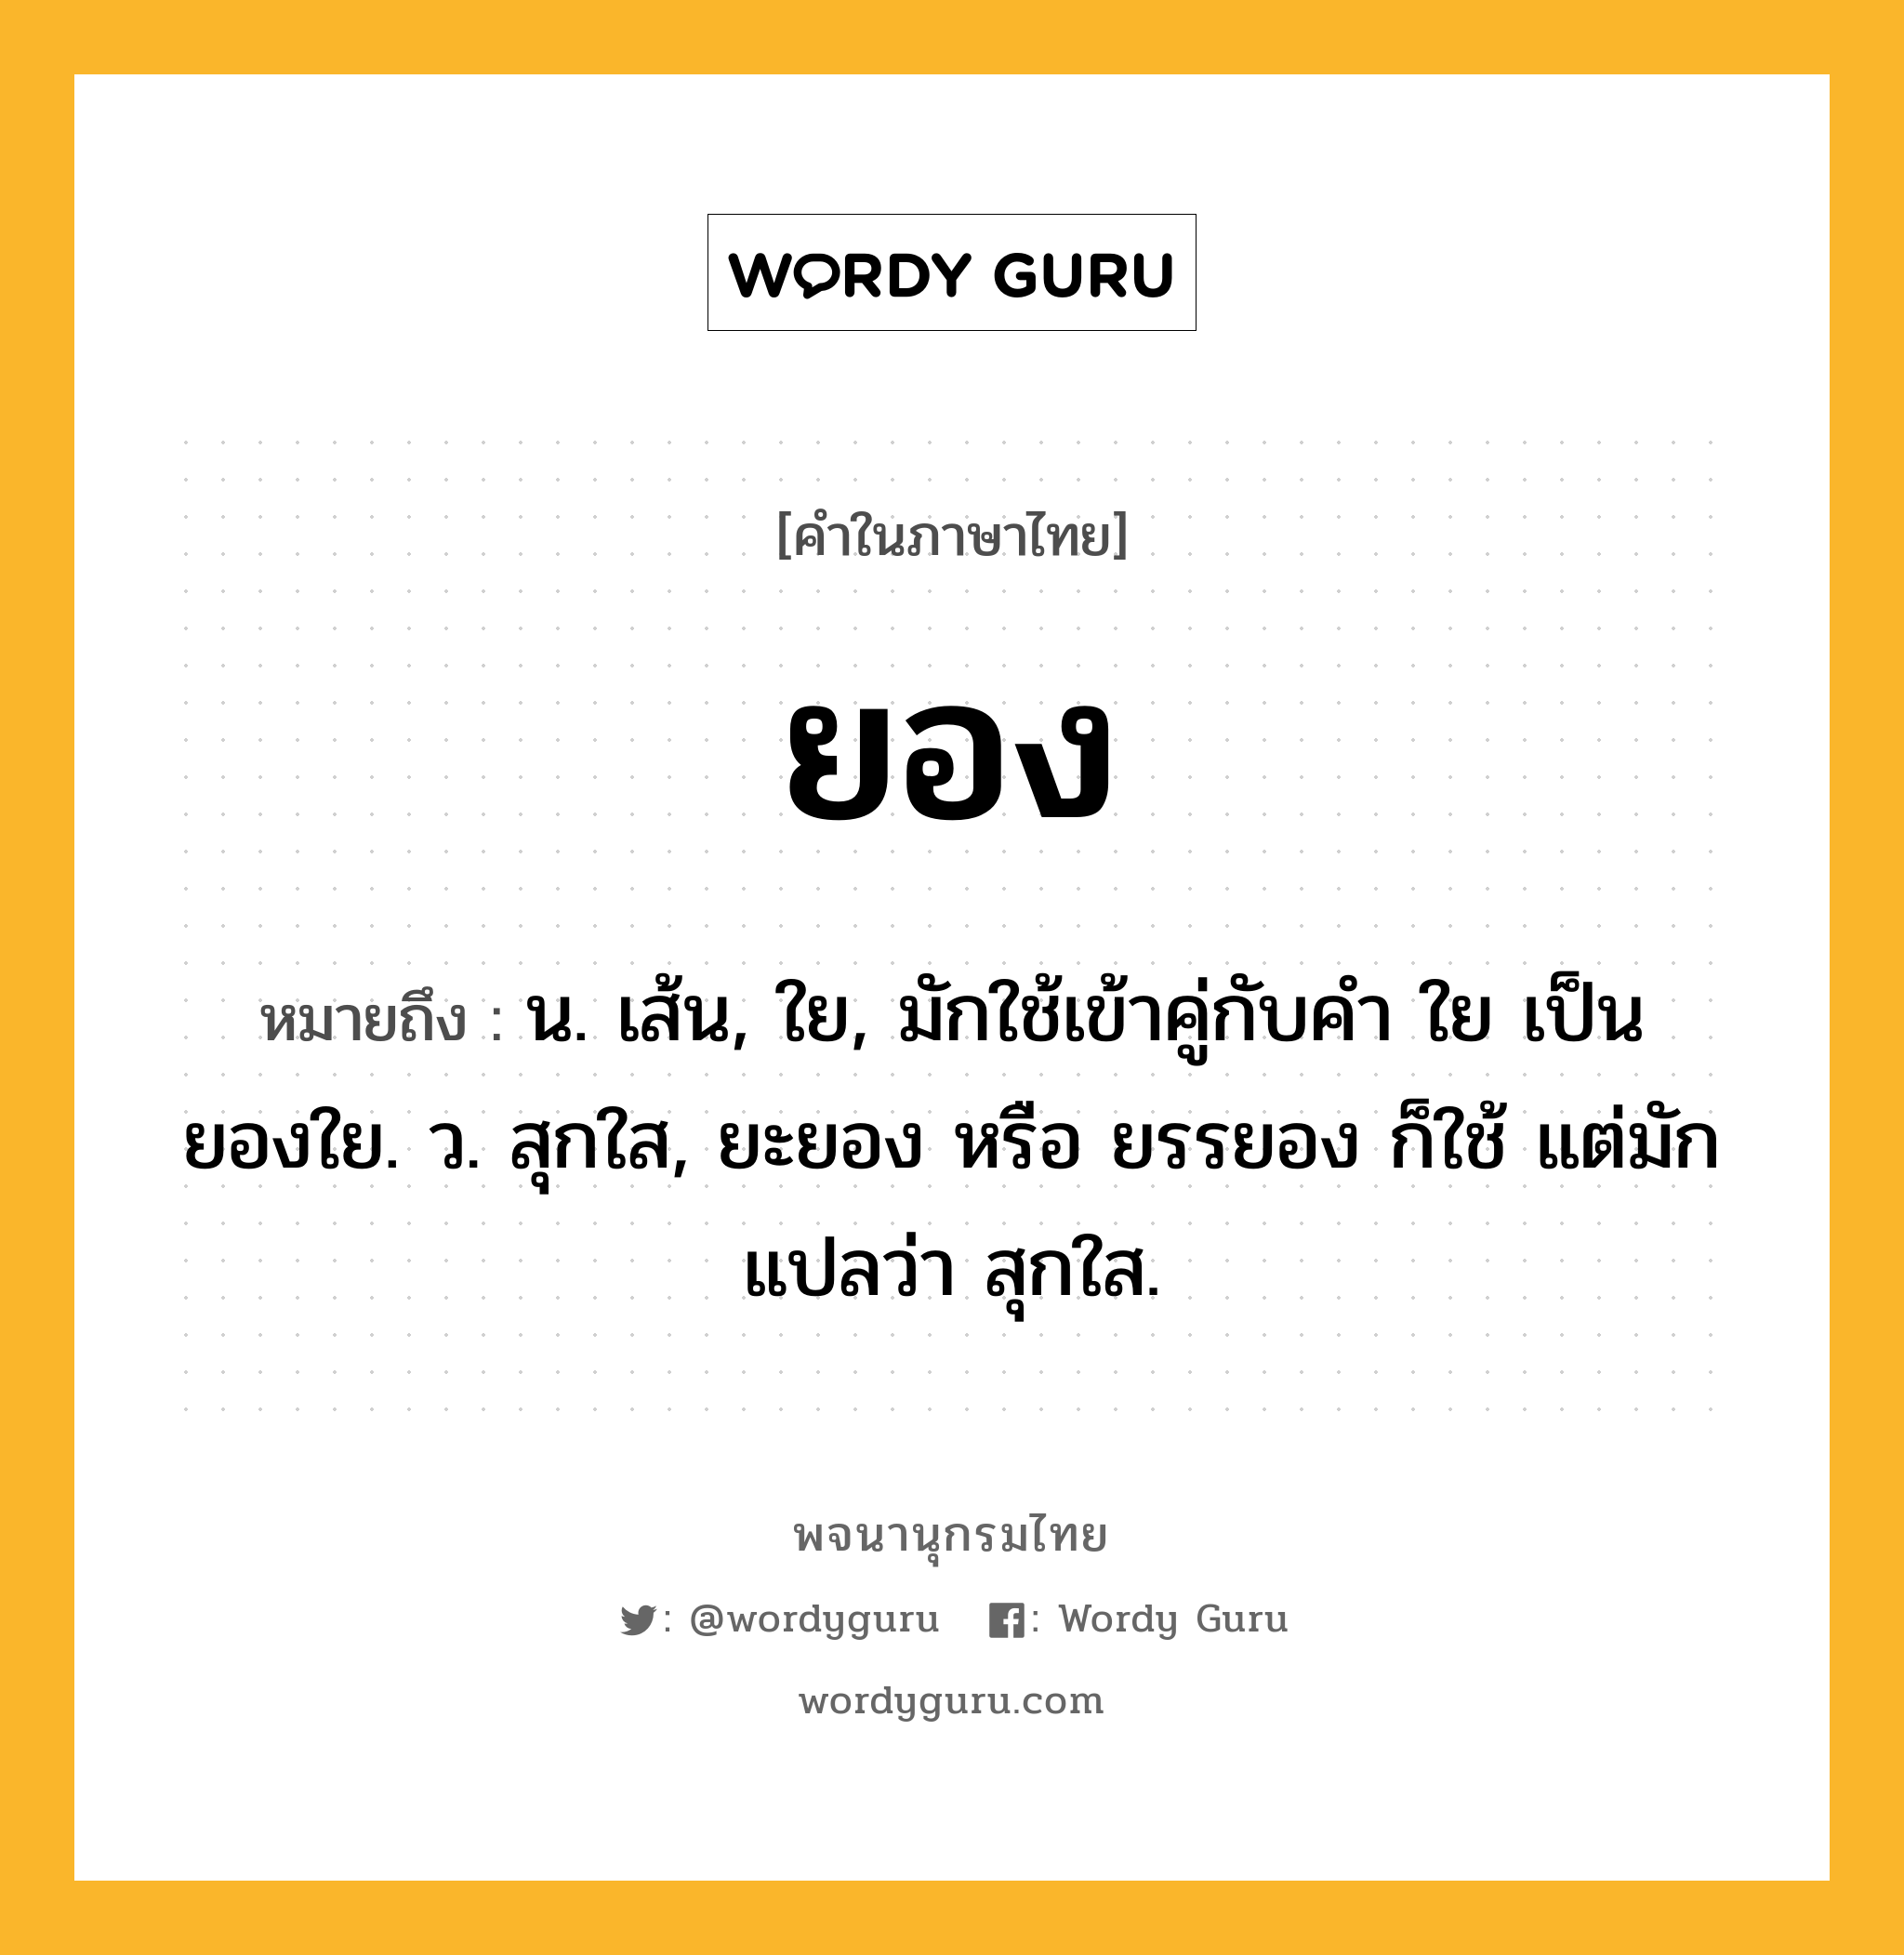 ยอง หมายถึงอะไร?, คำในภาษาไทย ยอง หมายถึง น. เส้น, ใย, มักใช้เข้าคู่กับคำ ใย เป็น ยองใย. ว. สุกใส, ยะยอง หรือ ยรรยอง ก็ใช้ แต่มักแปลว่า สุกใส.